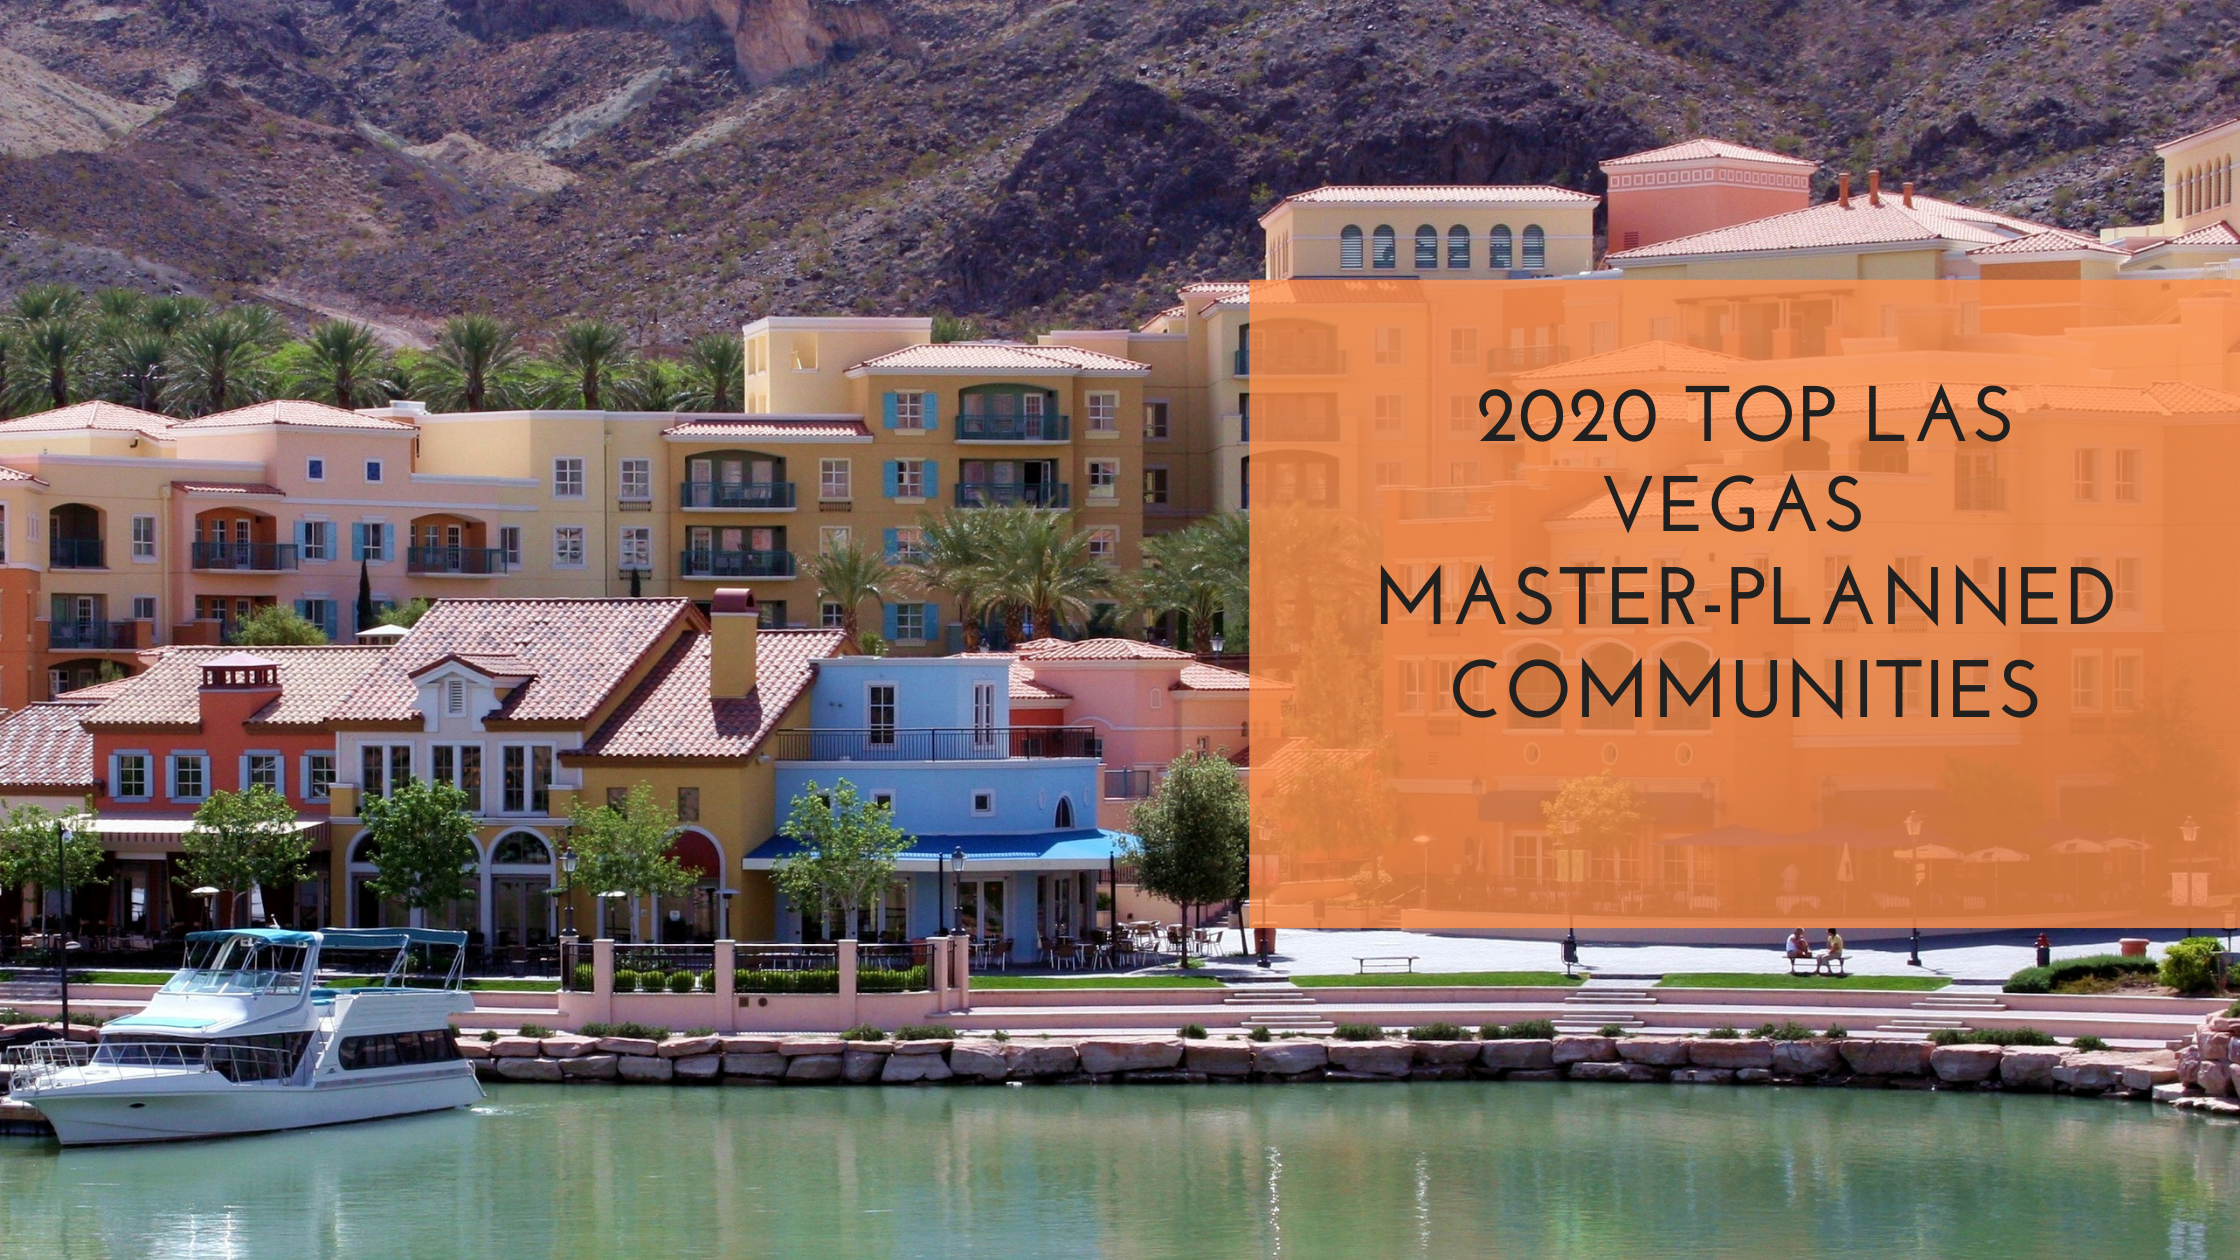 Top selling Las Vegas master-planned communities in 2020